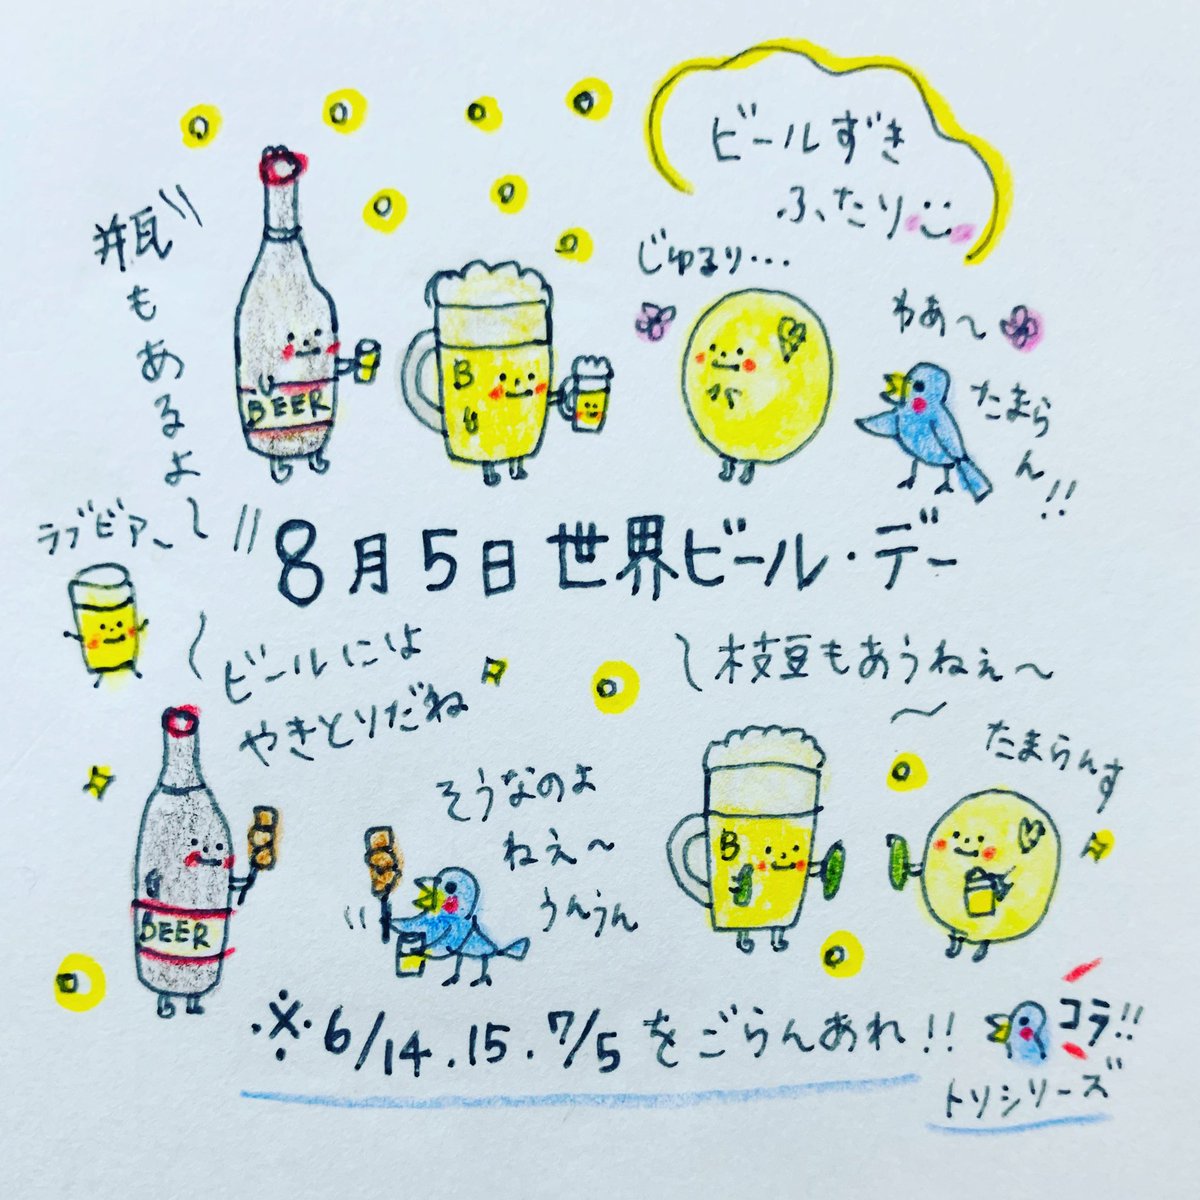 瓶ビール のイラスト マンガ作品 15 件 Twoucan